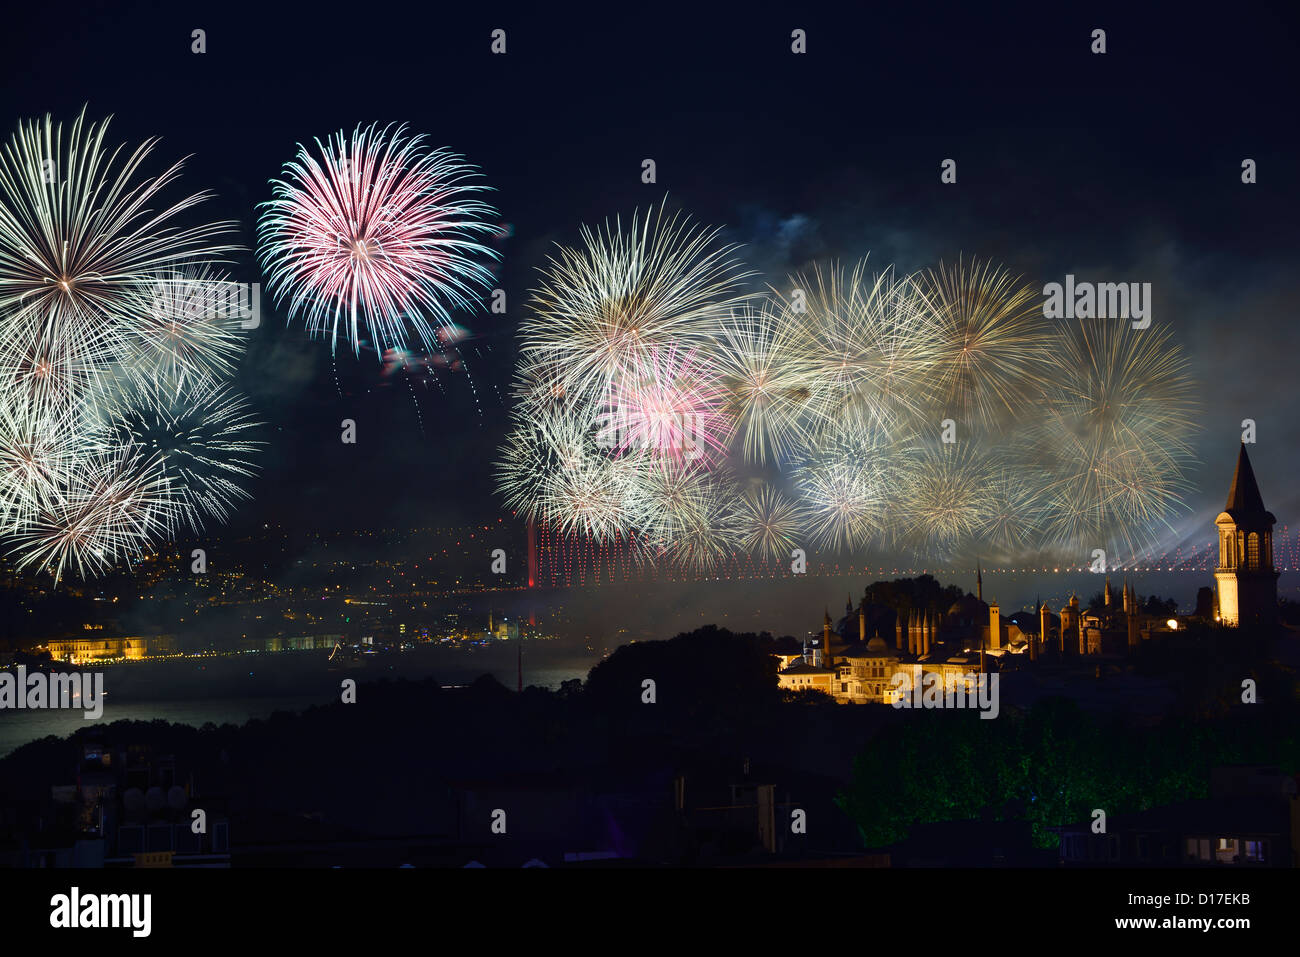 Spettacolo di luci sul Ponte sul Bosforo con fuochi d'artificio e le luci della notte sul palazzo Topkapi Istanbul Turchia Foto Stock